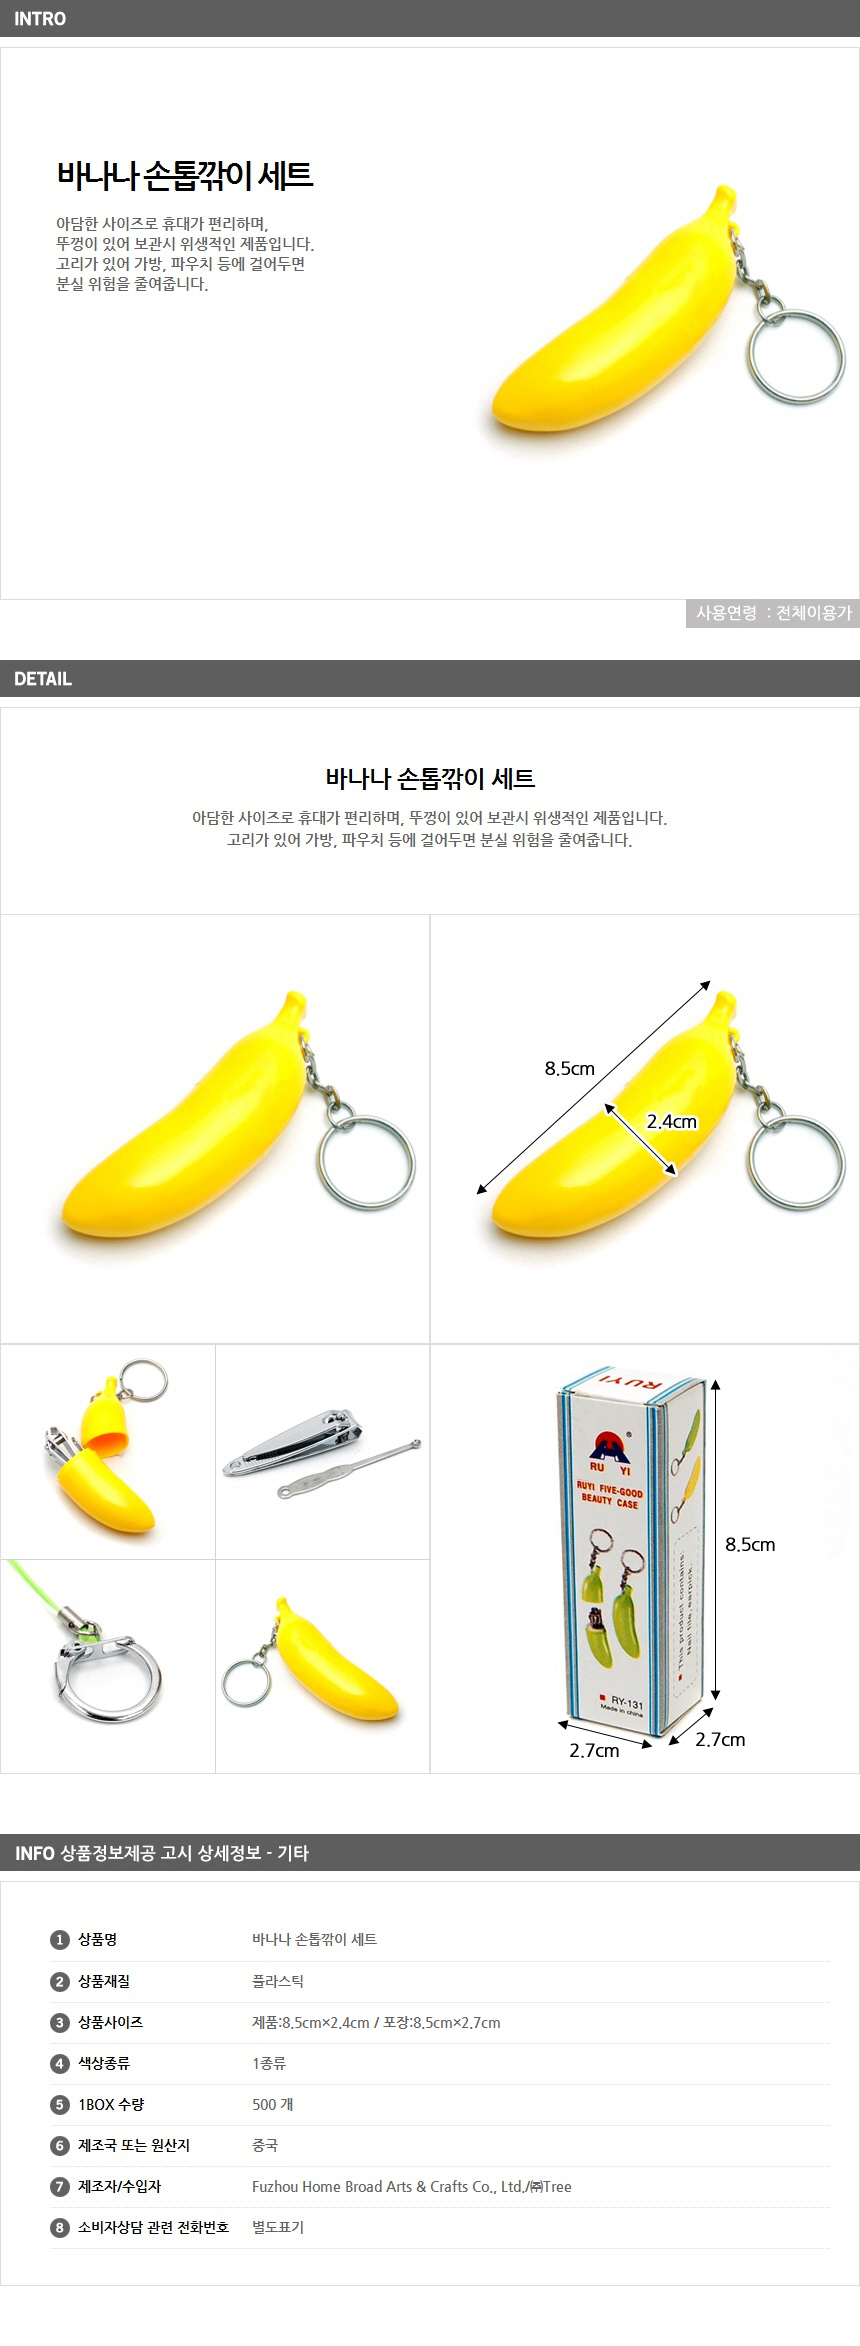 바나나 손톱깎이 세트 열쇠고리 / 네일아트 판촉 인쇄